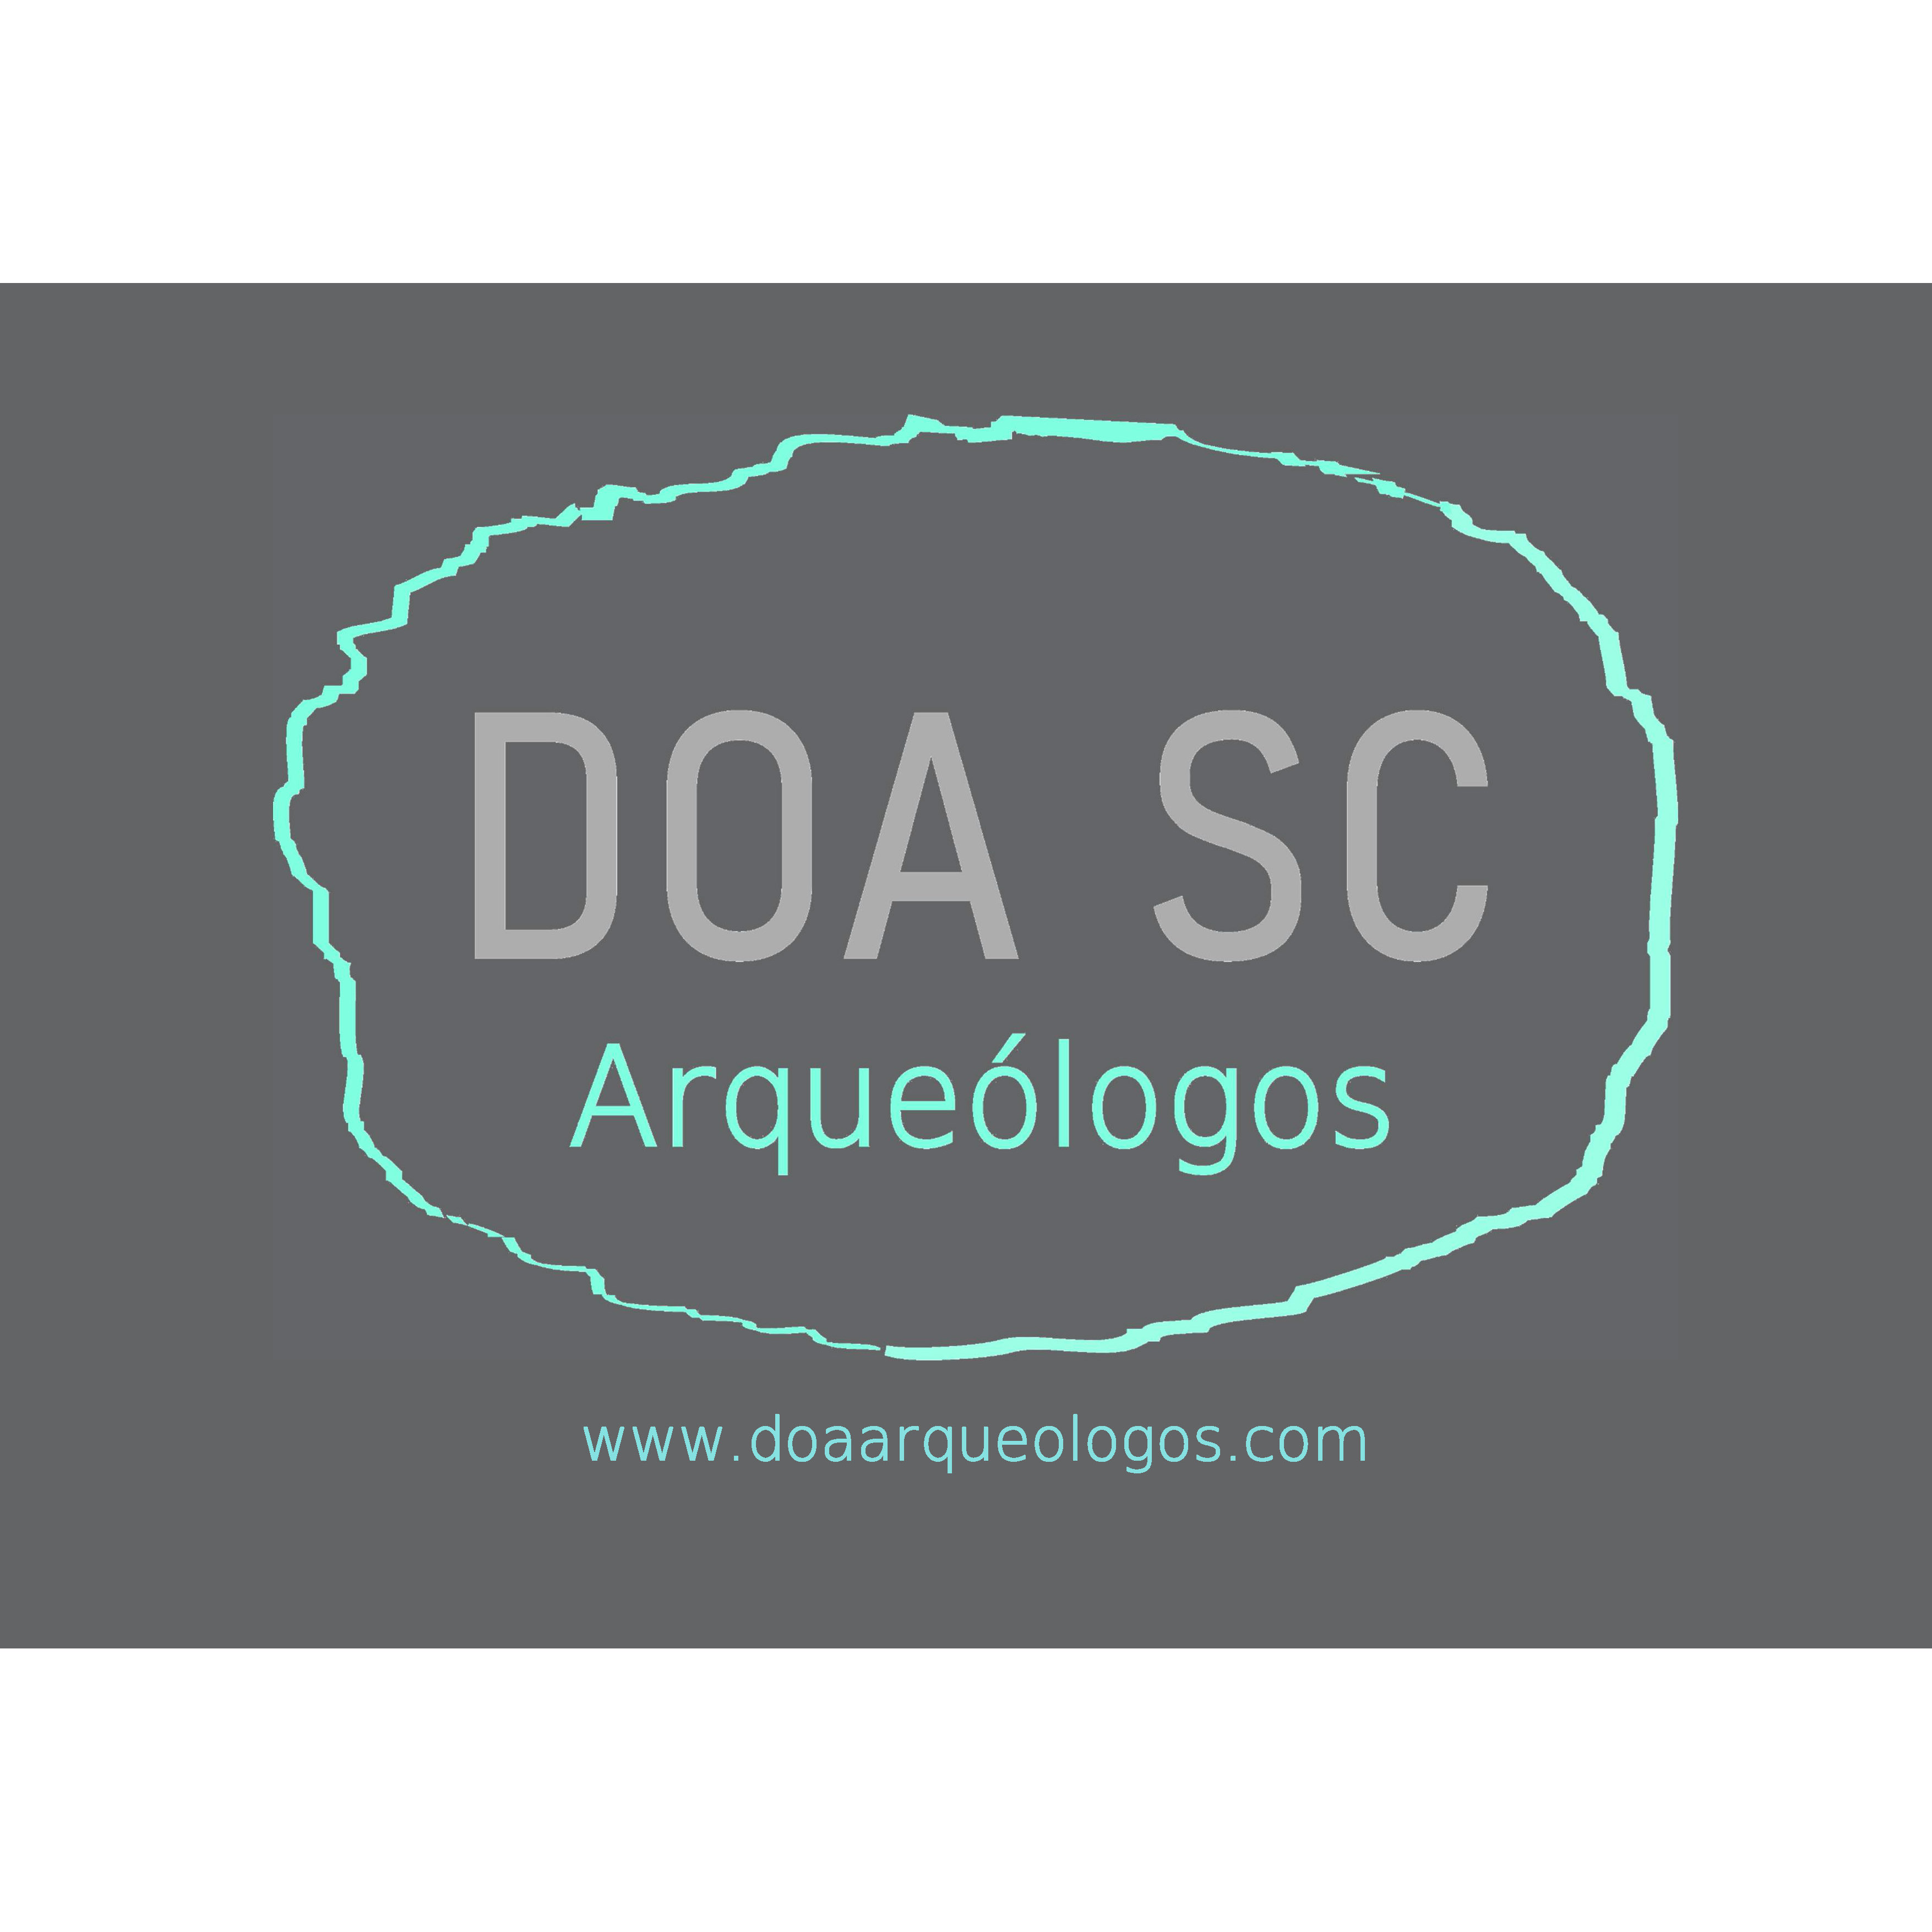 DOA SC Arqueólogos Logo